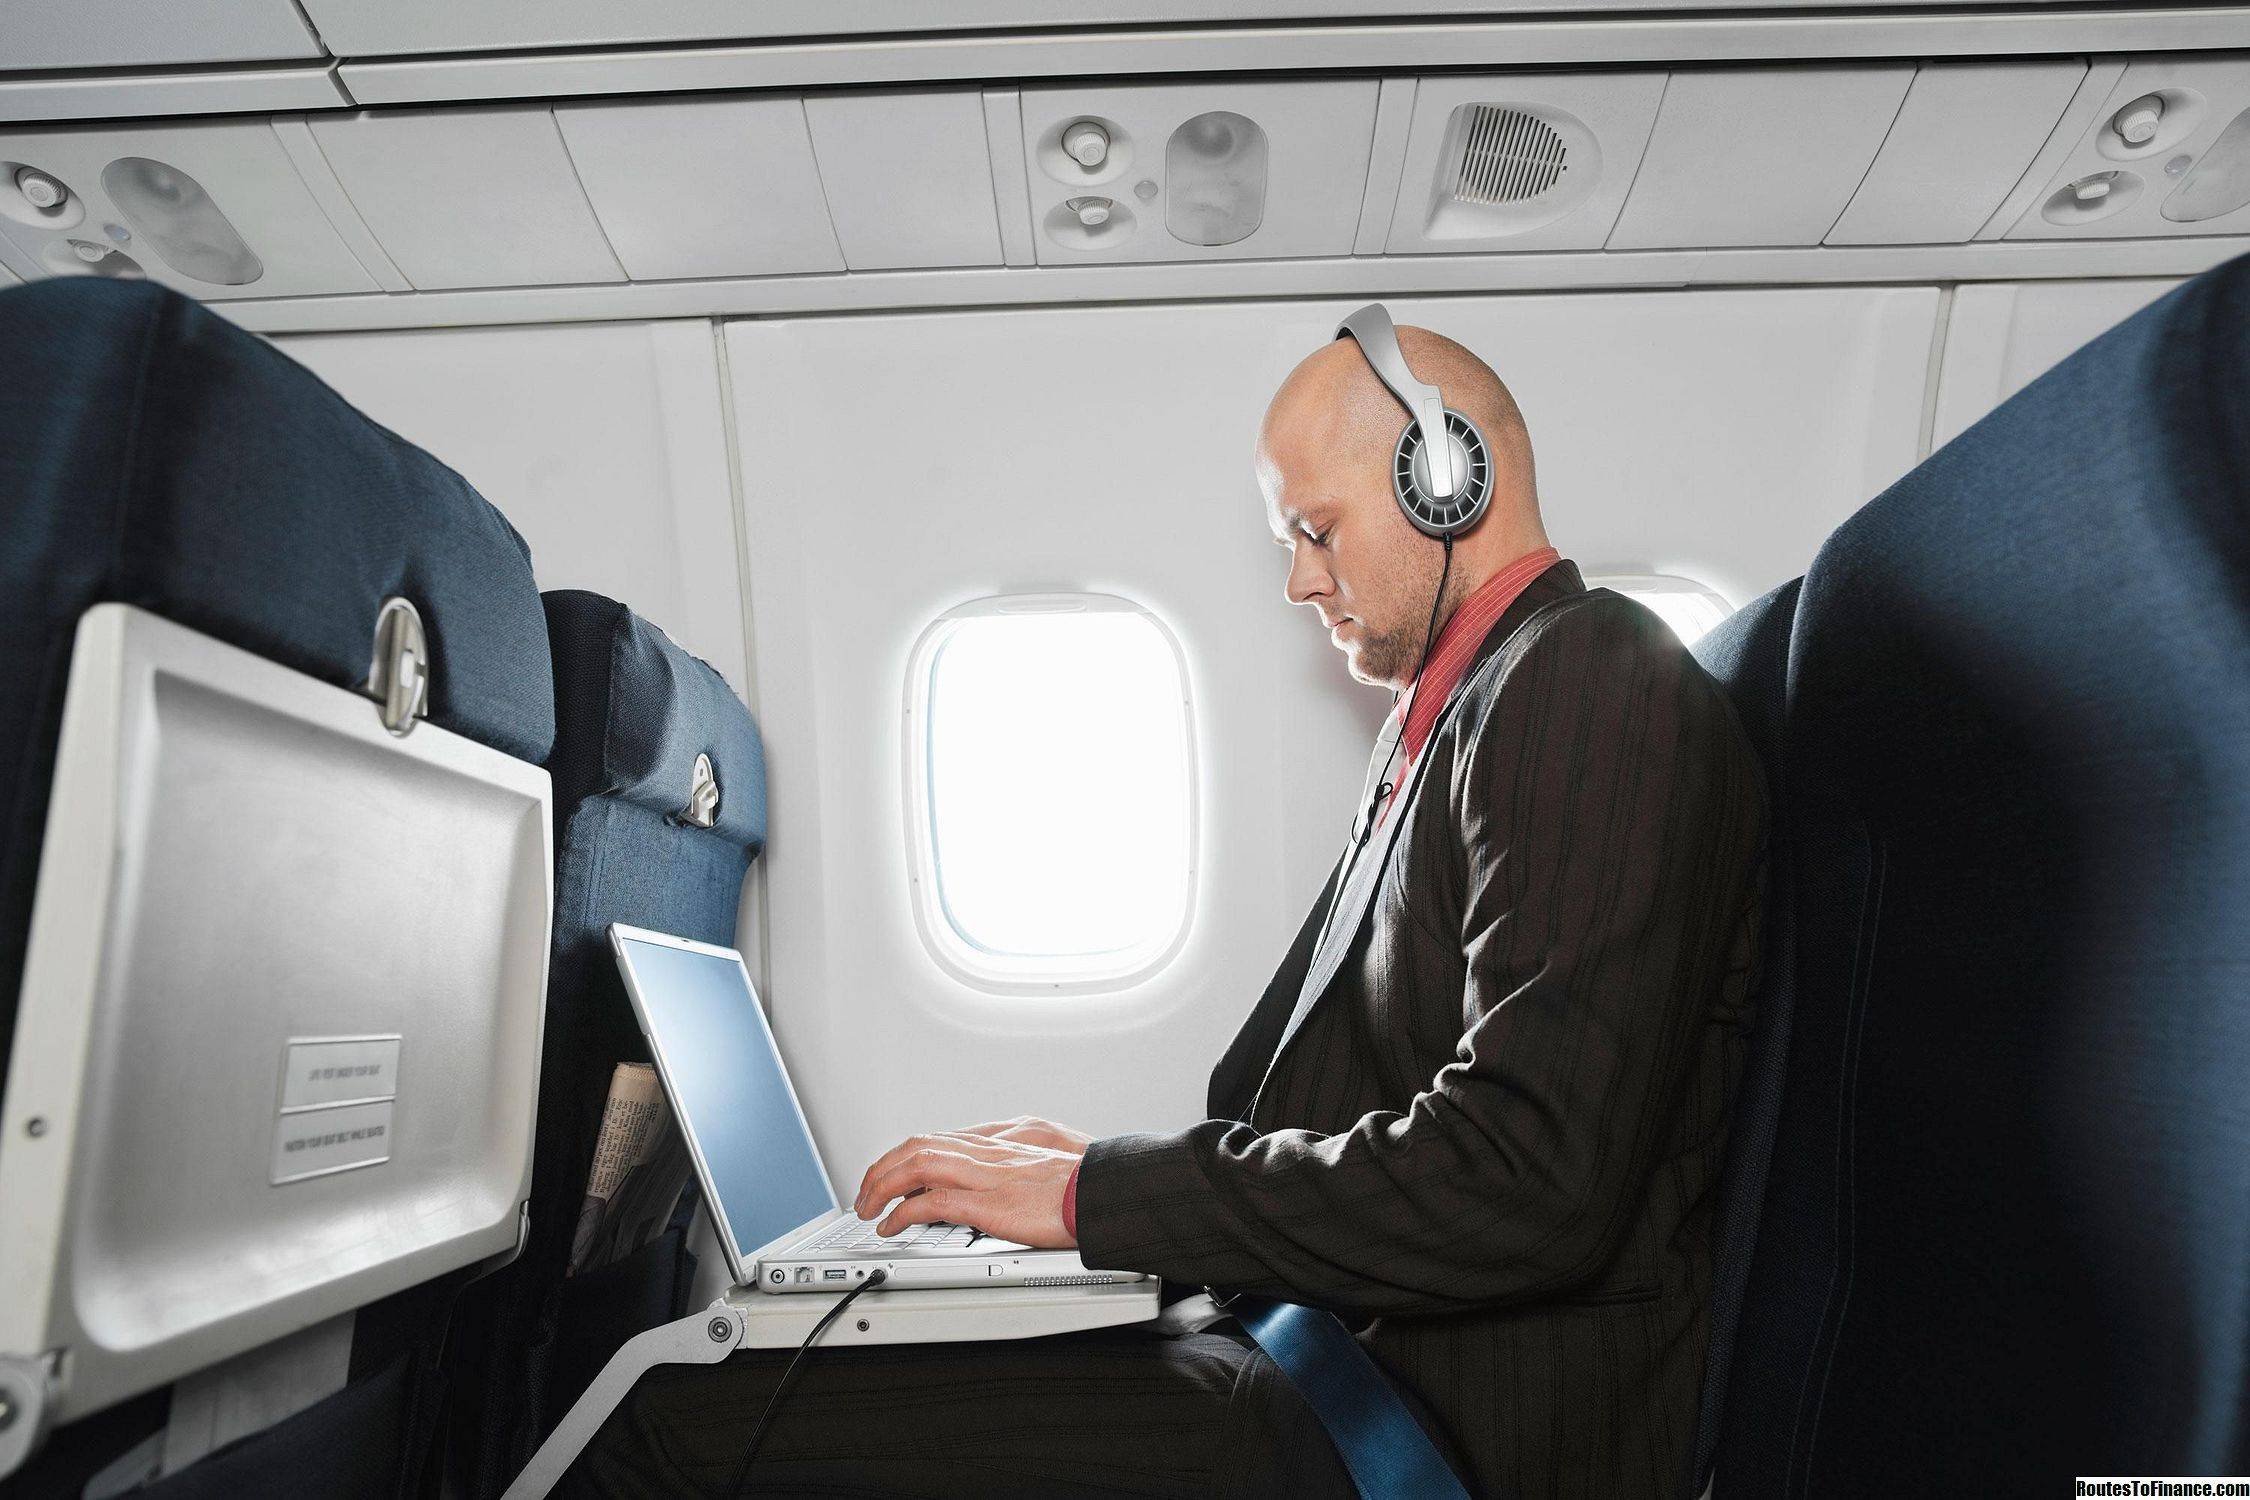 Интернет в самолете: можно ли пользоваться wifi во время полета, список авиакомпаний, предоставляющих услугу